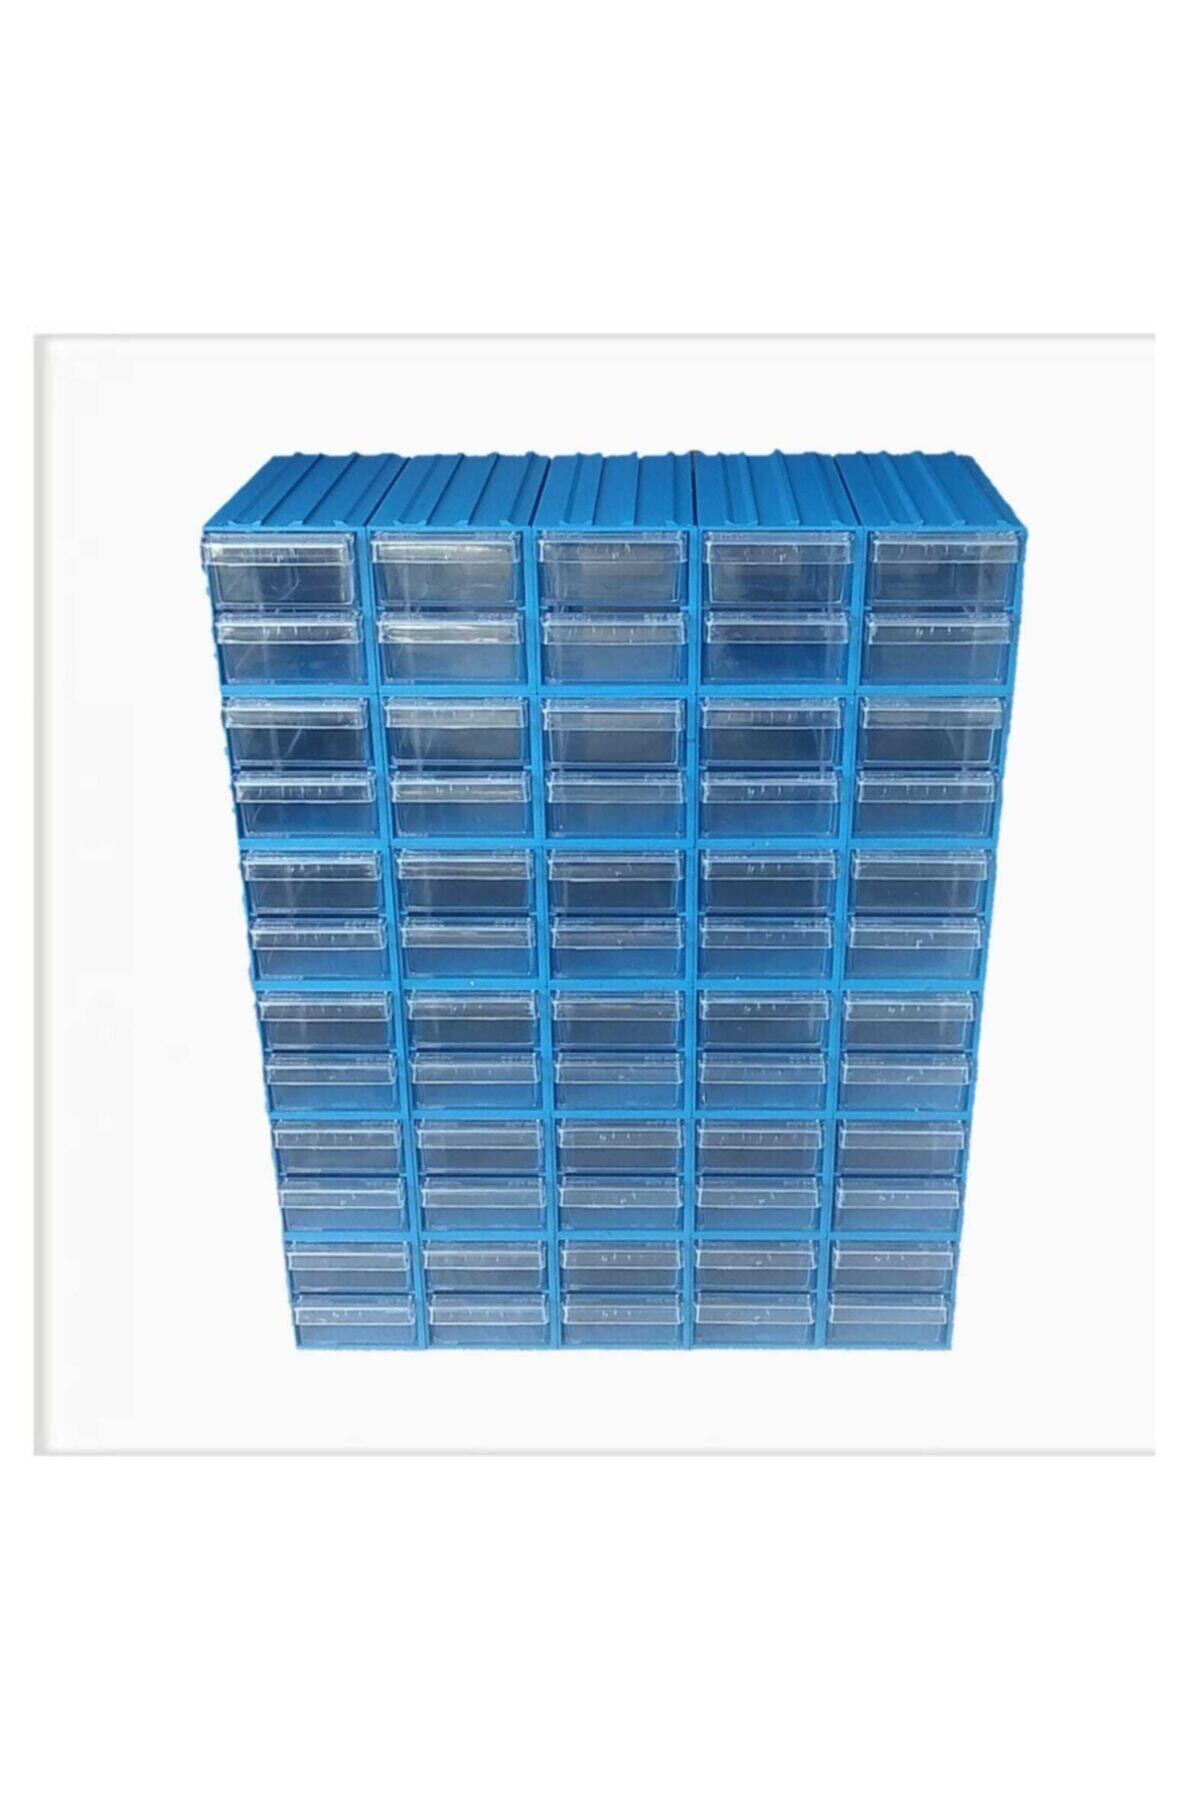 Sembol 300 Plastik Çekmeceli Kutu 4,6x11,7x2,4 Cm / Küçük Ebattır (60 Çekmeceli)